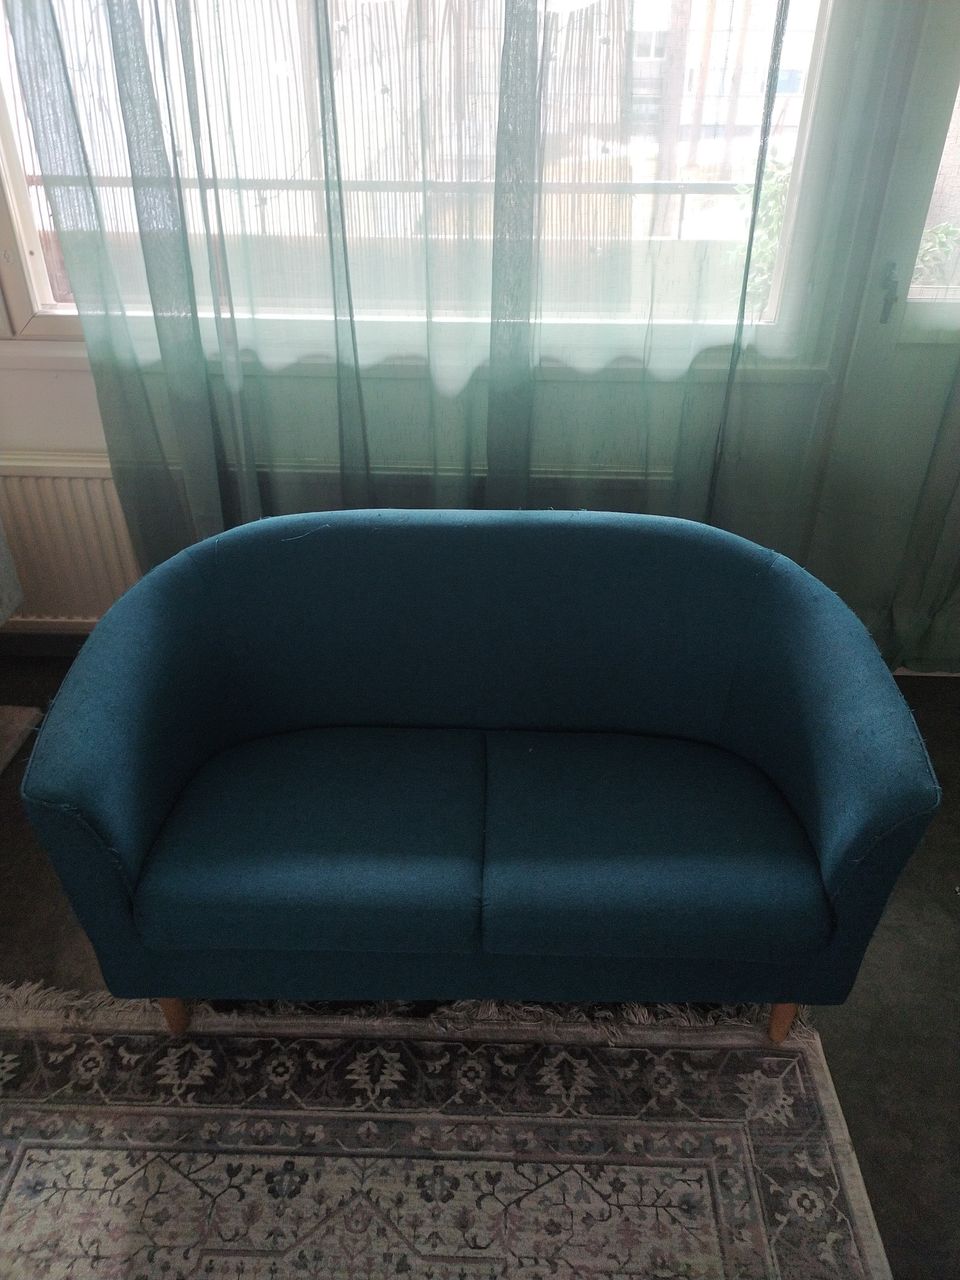 Petroolin värinen sohva